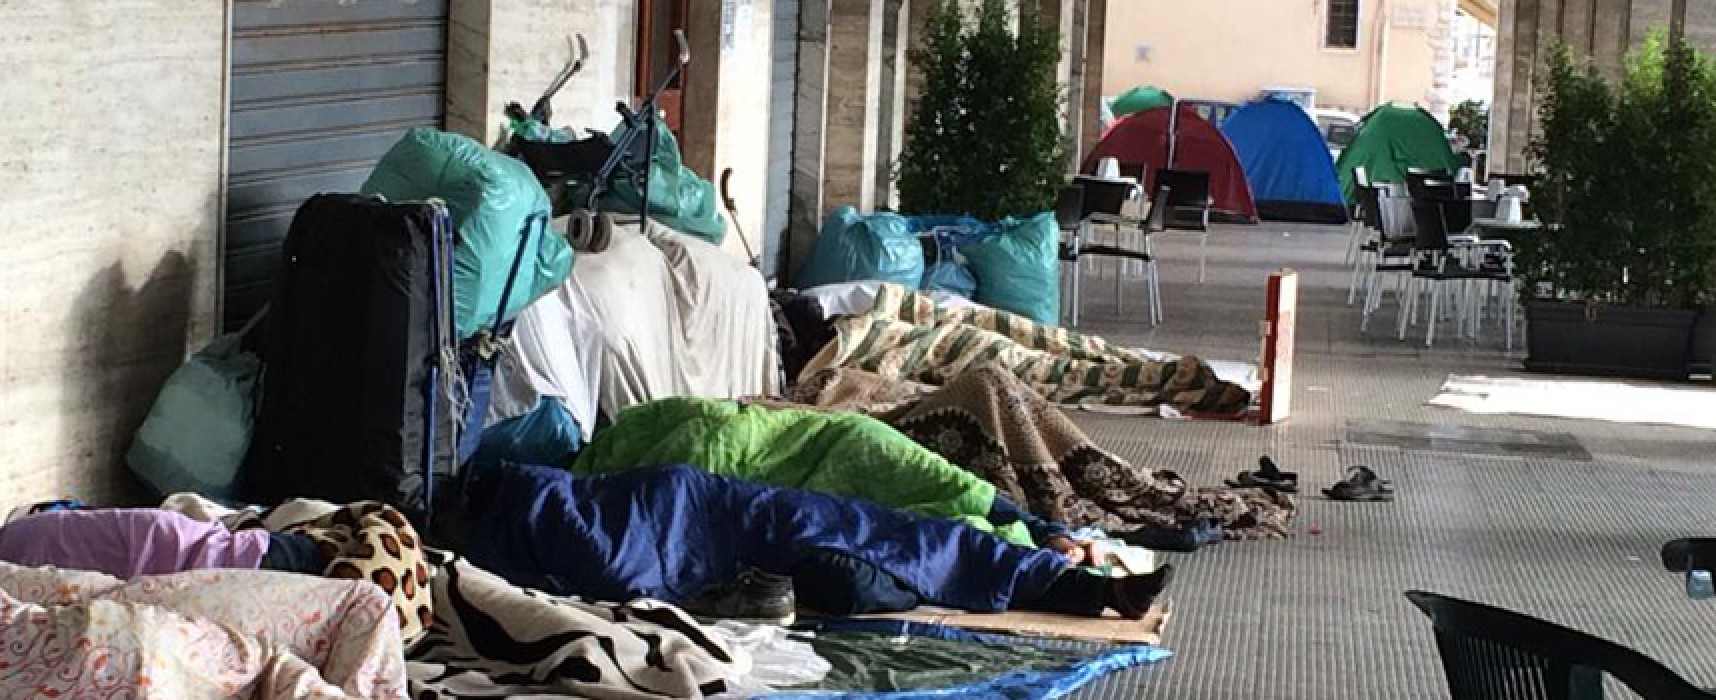 Ambulanti accampati da giorni in piazza Vittorio Emanuele / FOTO